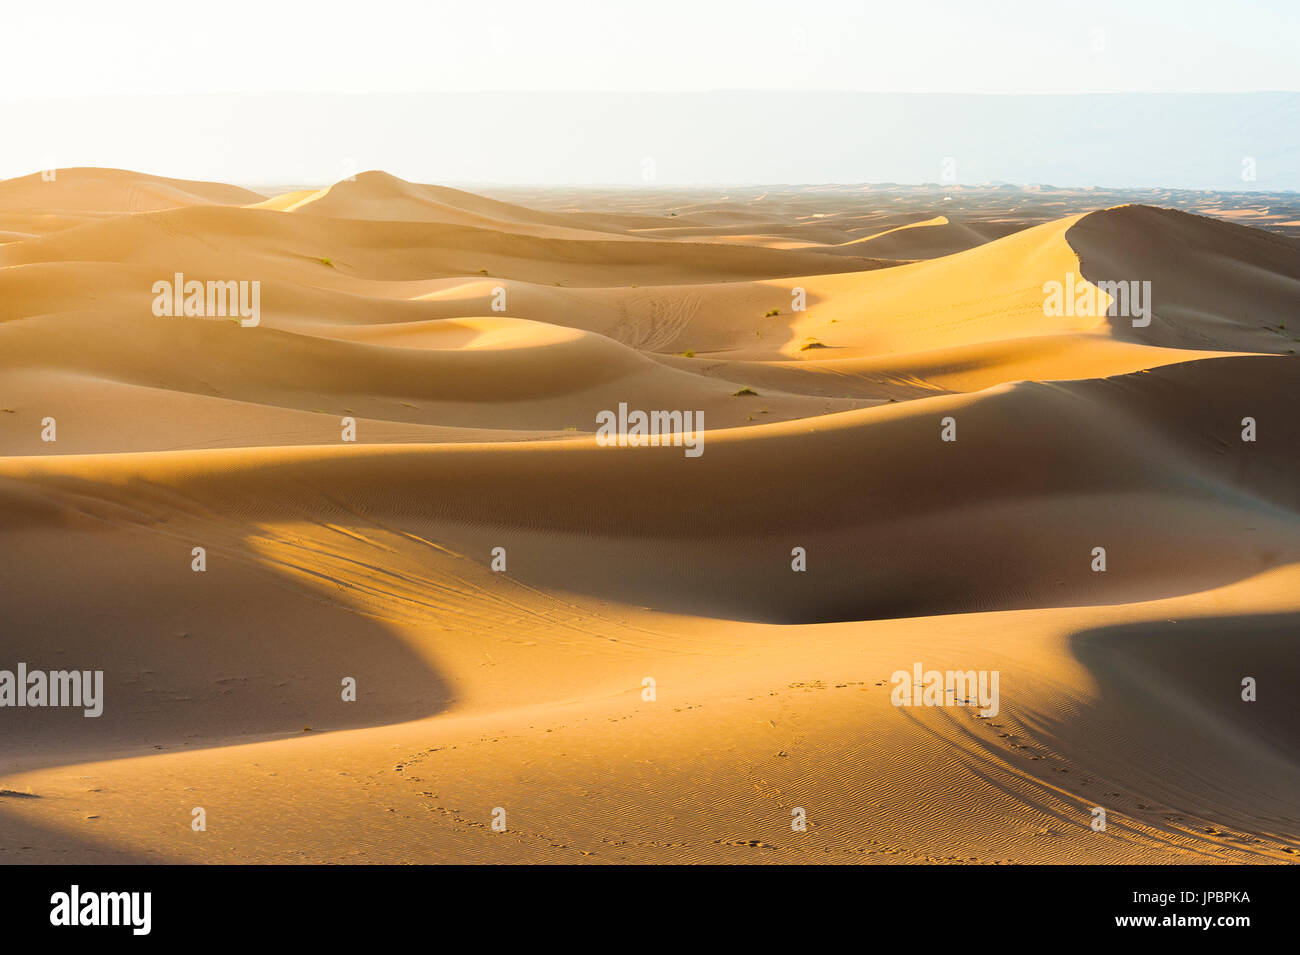 Erg Chigaga, Sahara desert, Morocco. Sand dunes at sunset. Stock Photo